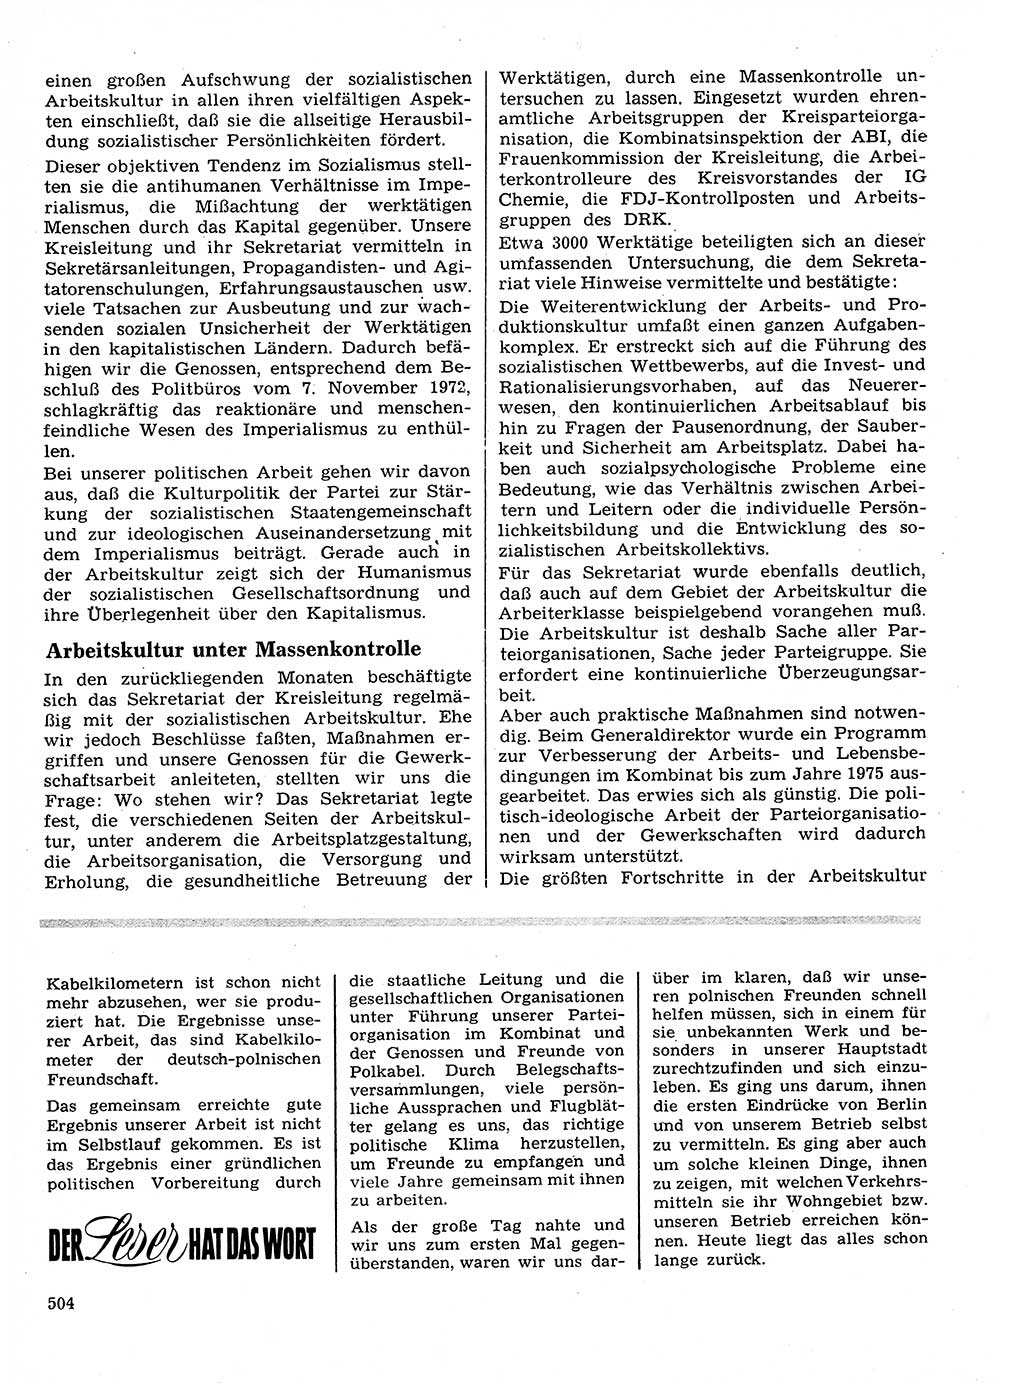 Neuer Weg (NW), Organ des Zentralkomitees (ZK) der SED (Sozialistische Einheitspartei Deutschlands) für Fragen des Parteilebens, 28. Jahrgang [Deutsche Demokratische Republik (DDR)] 1973, Seite 504 (NW ZK SED DDR 1973, S. 504)